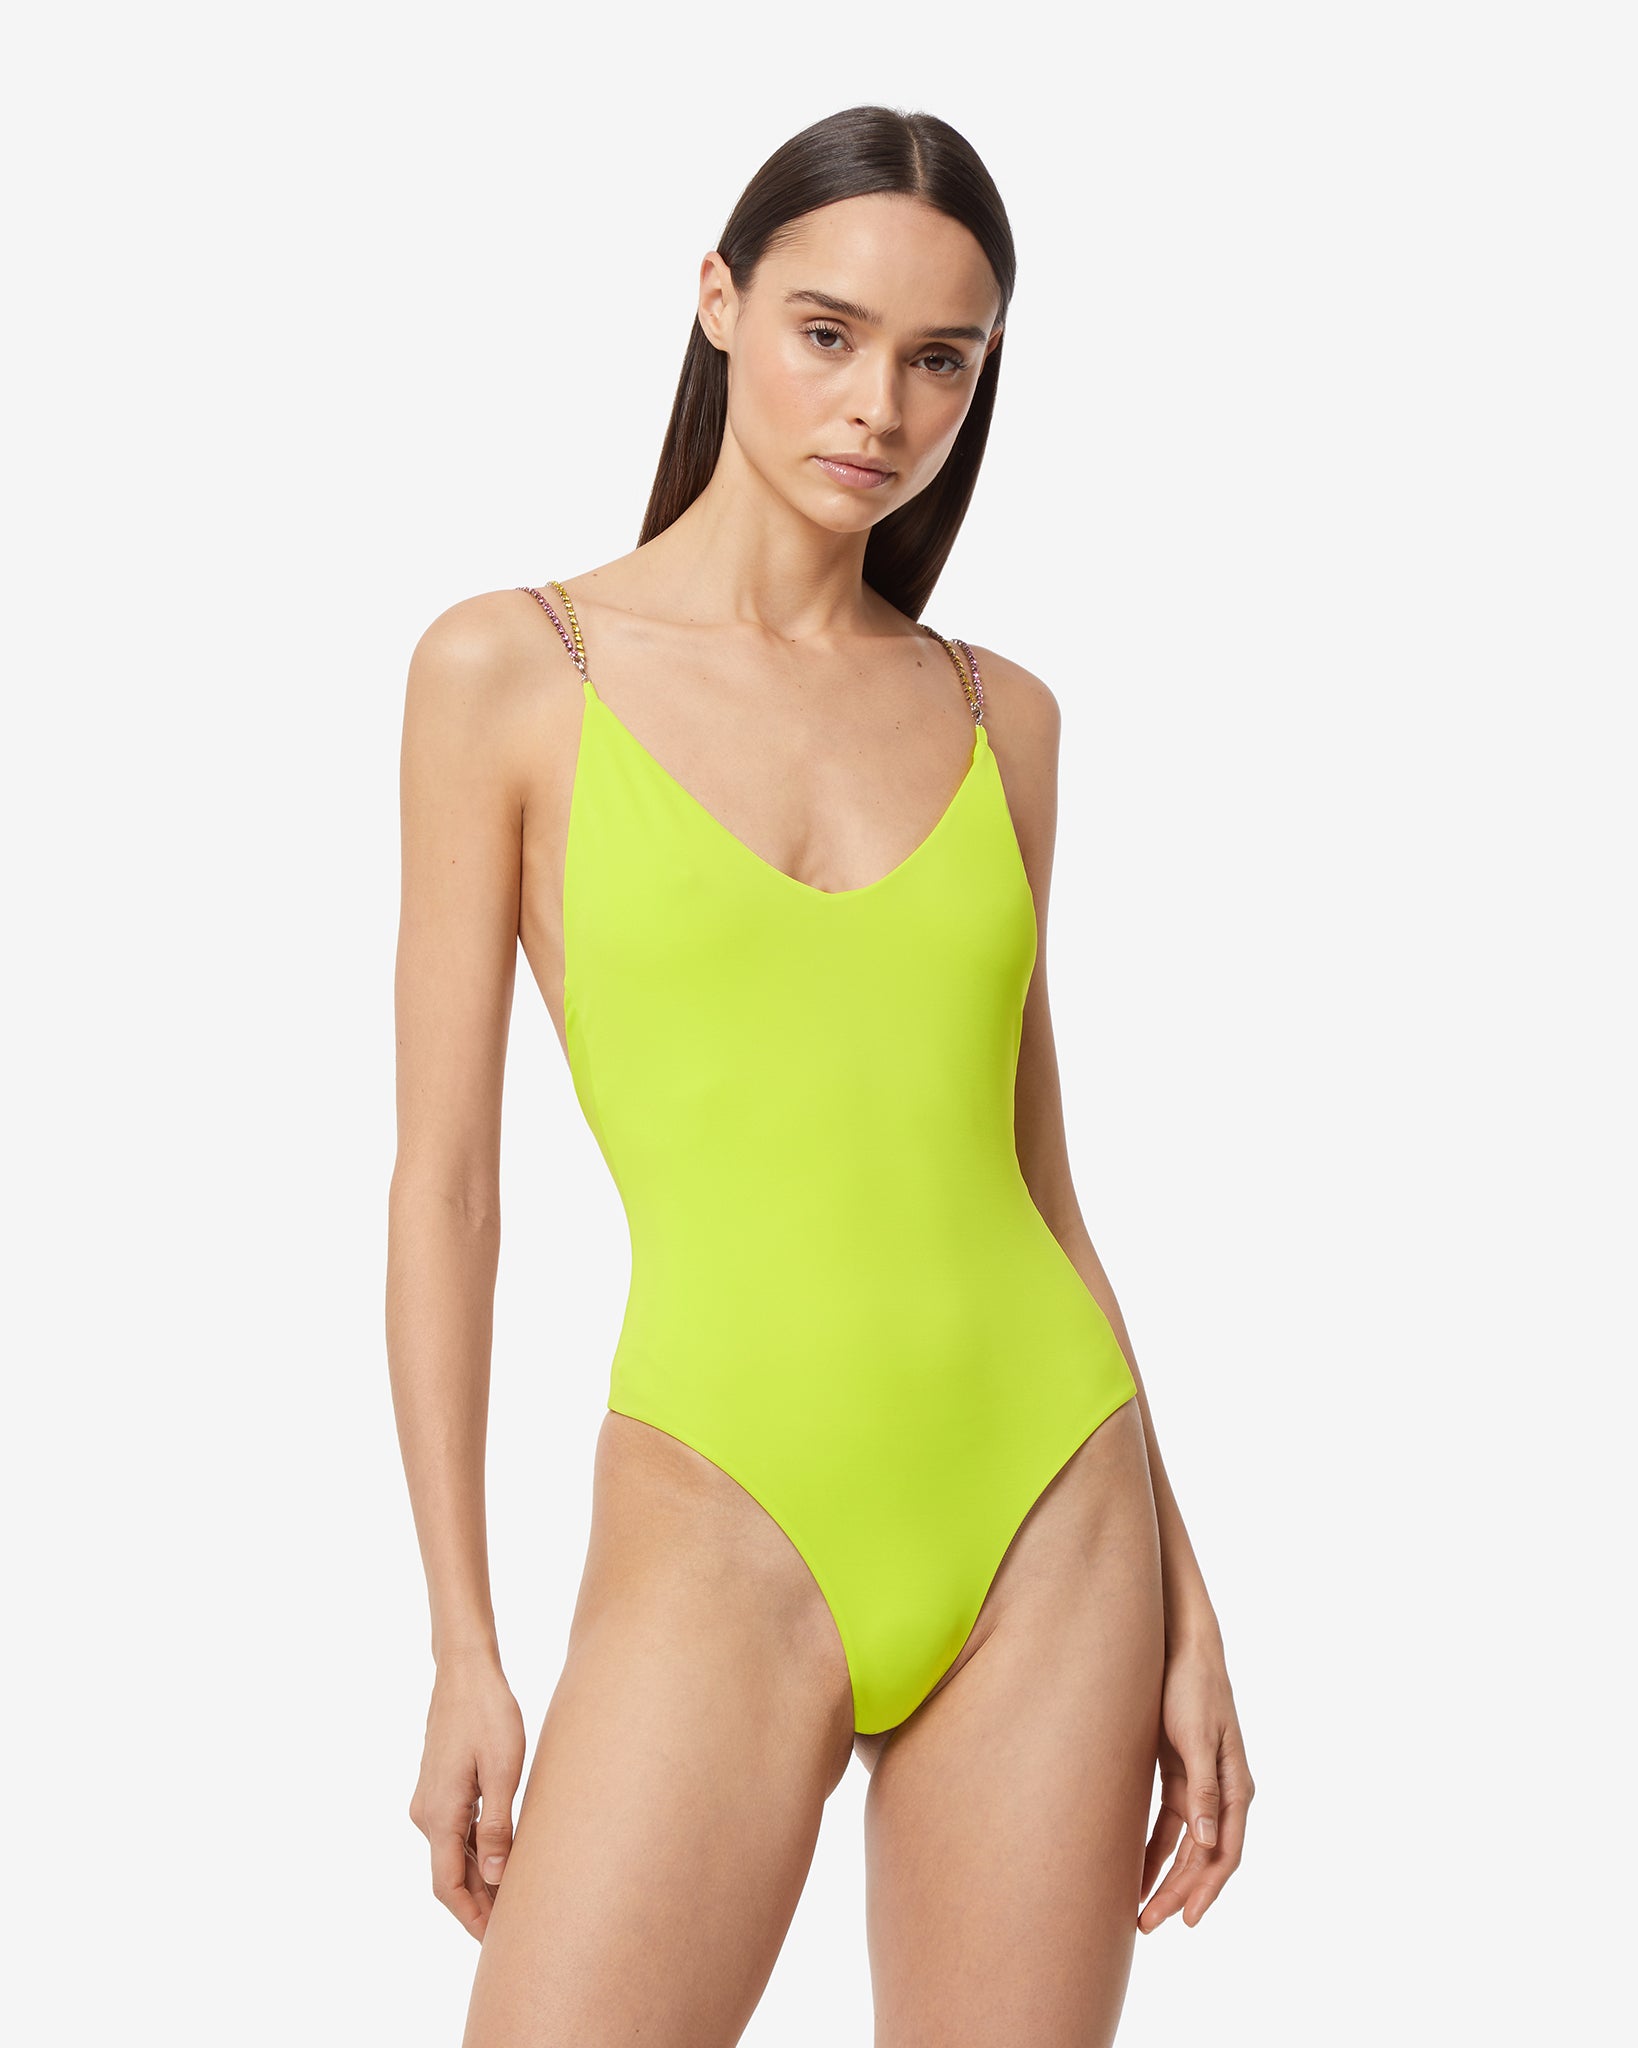 Bling one shoulder swimsuit : Women Swimwear Coral